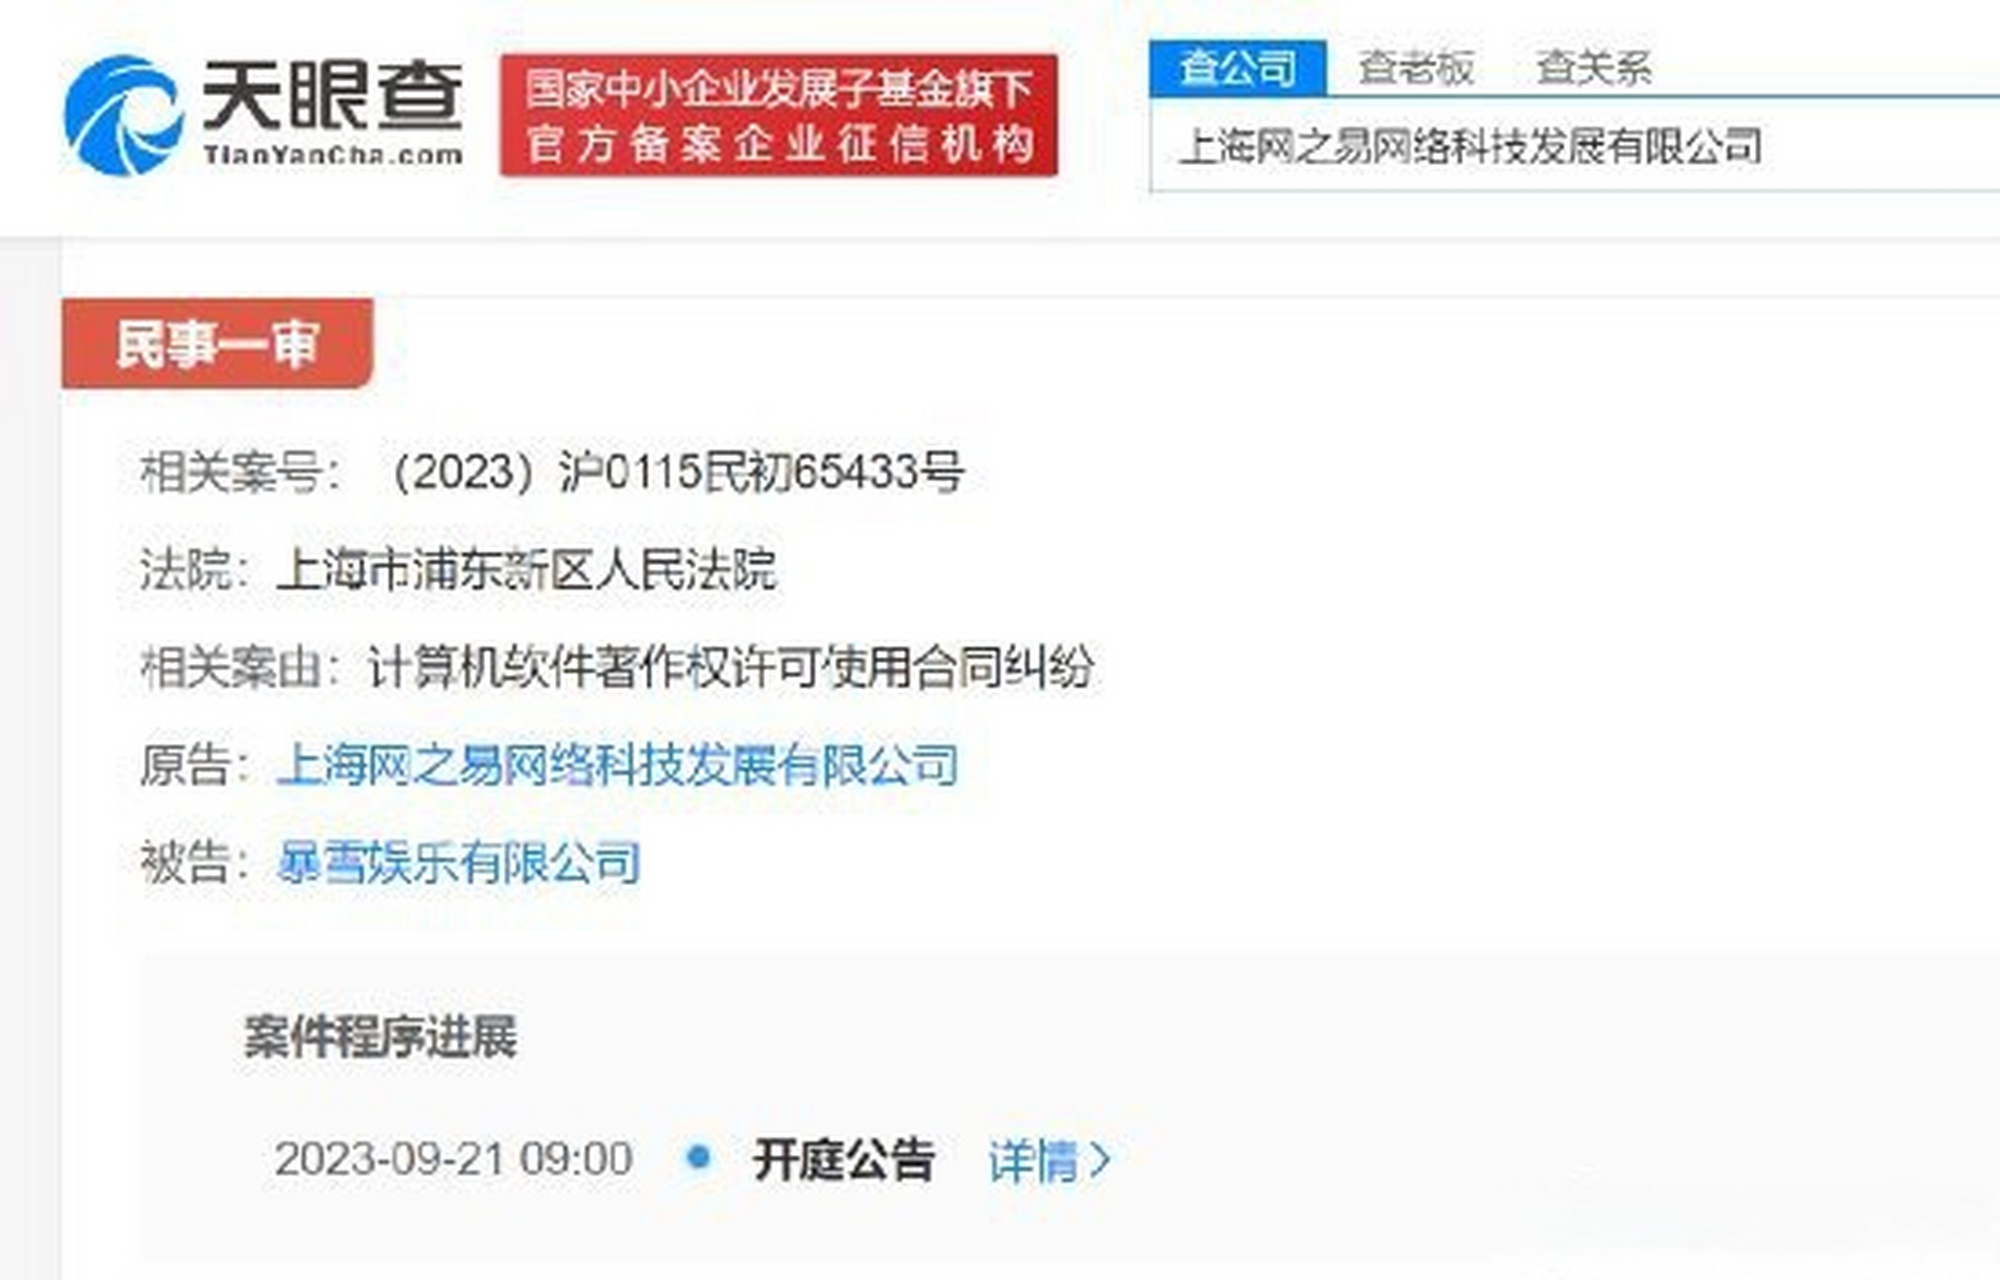 天眼查app显示,近日,上海网之易网络科技发展有限公司与暴雪娱乐有限